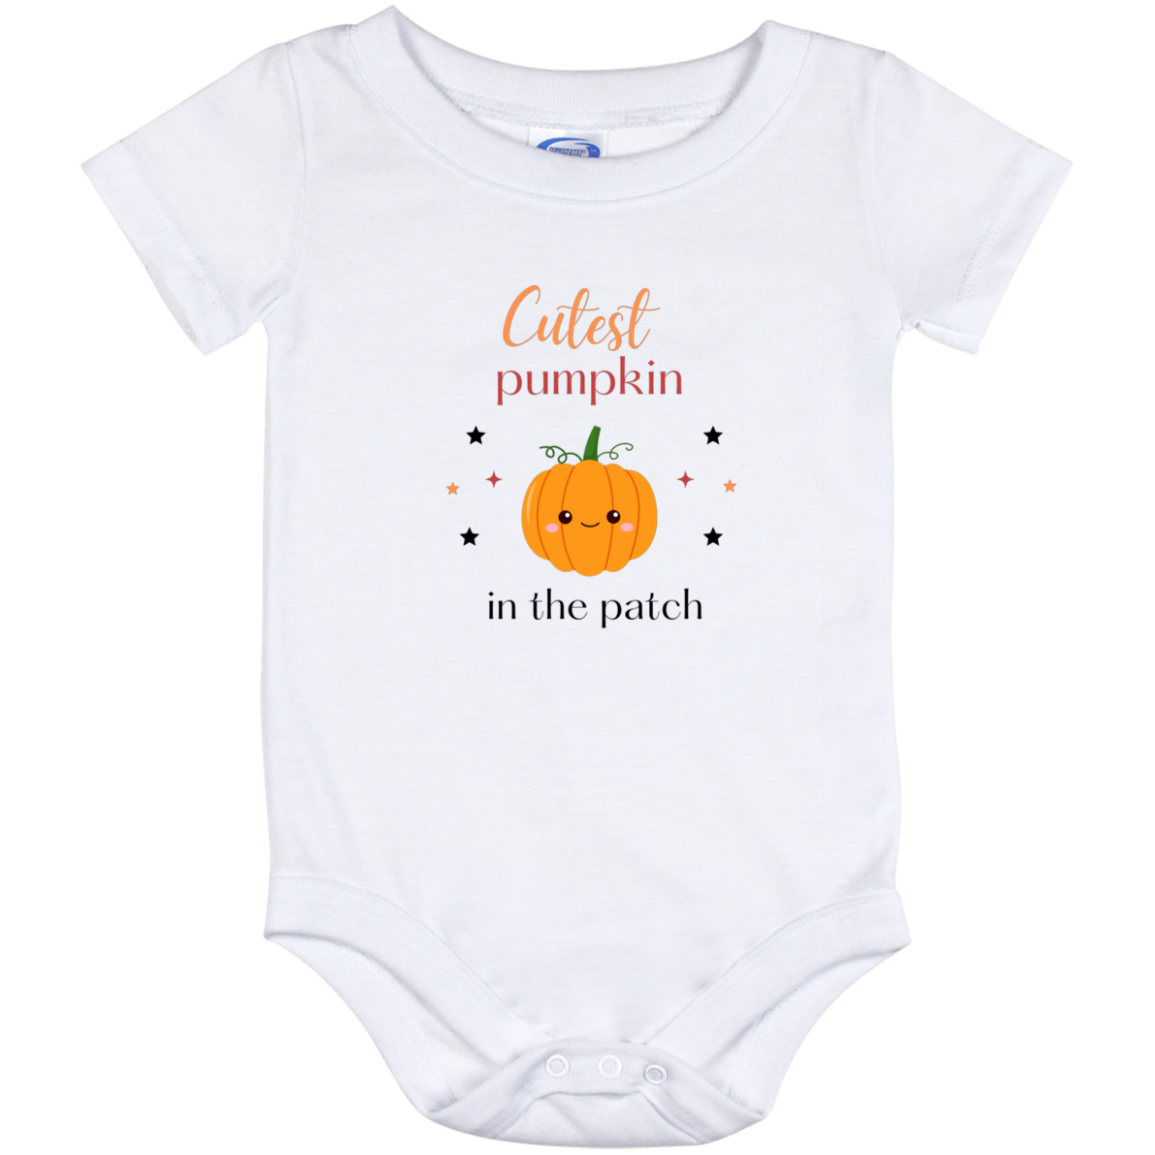 Cutest Pumpkin - Unisex Baby Onesie 6, 12, & 24 Month